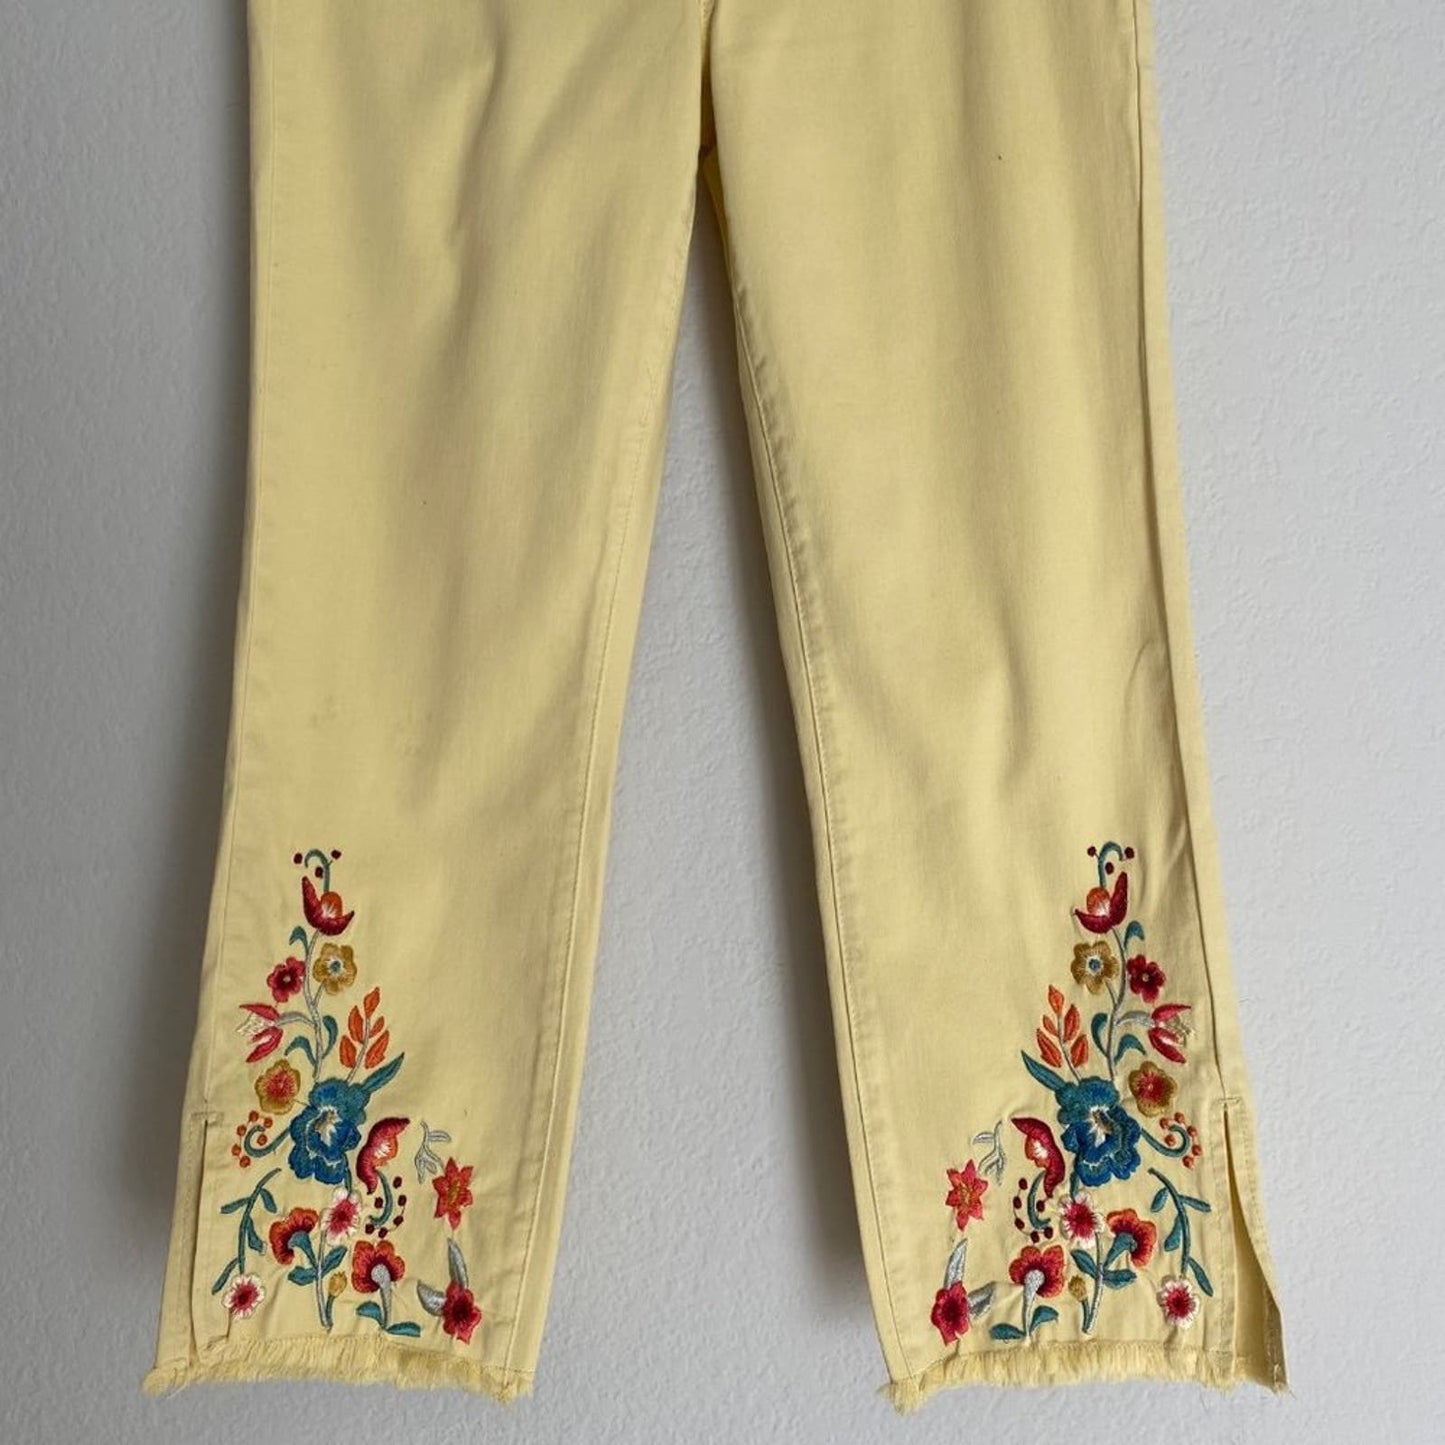 Tribal sz 4 audrey 70s mid rise straight capri floral jean pants